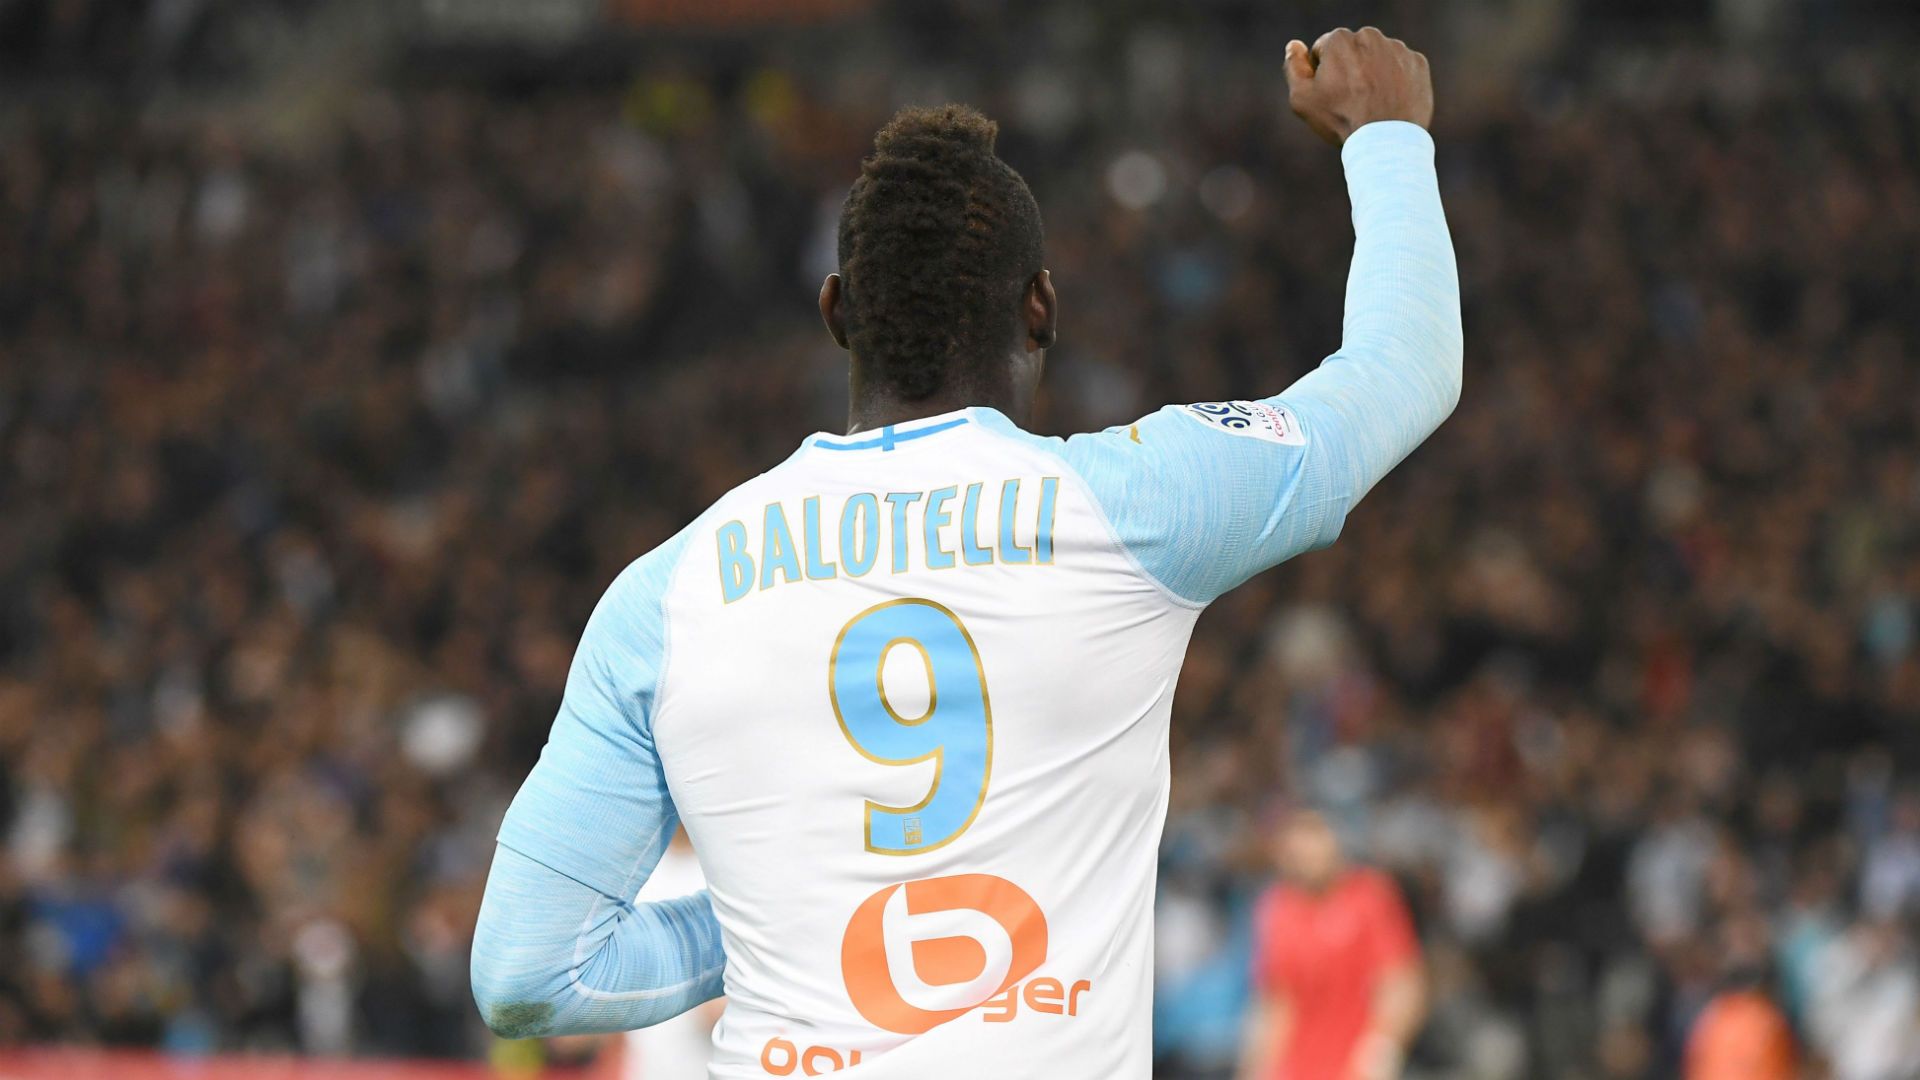 Marseille No9 Balotelli Third Soccer Club Jersey